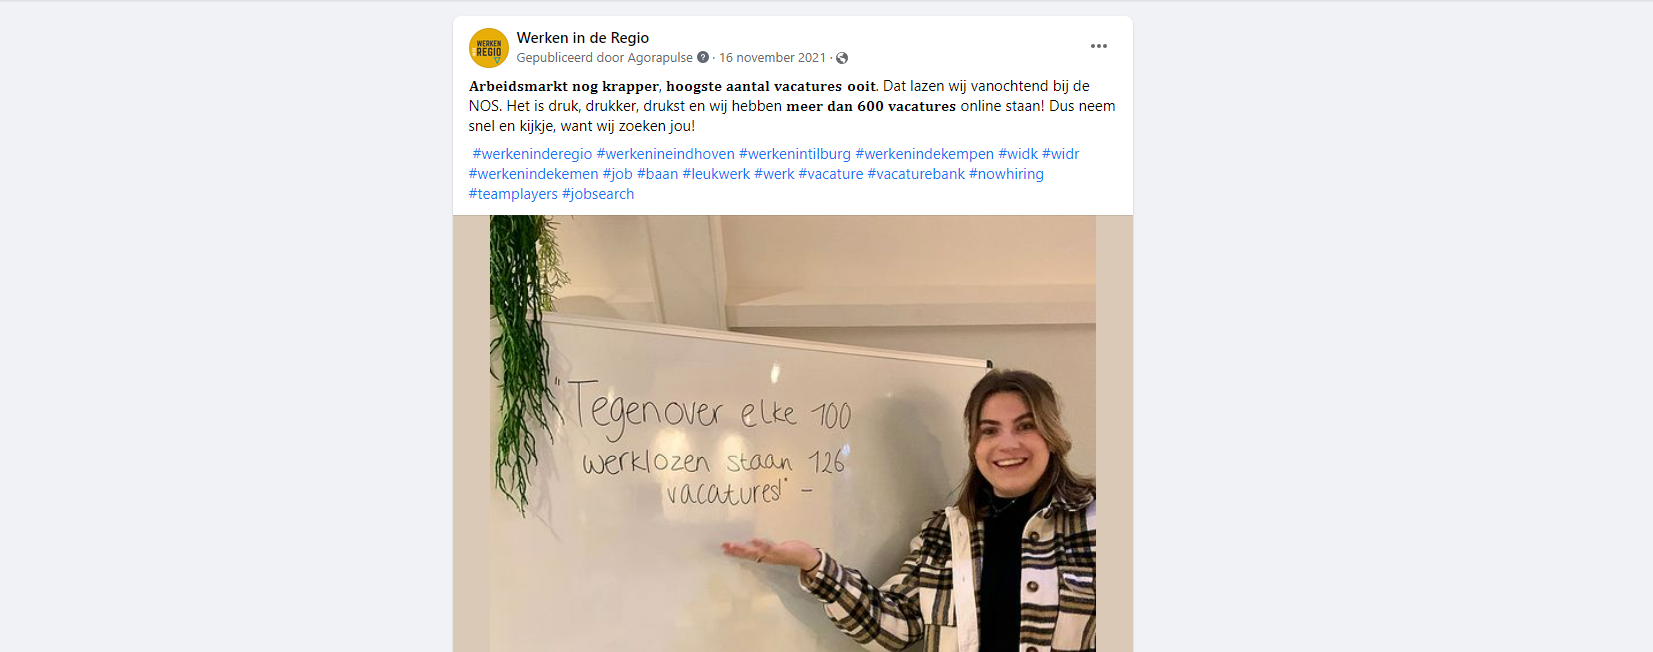 Screenshot Facebook post Werken in de Regio op 16 november 2021